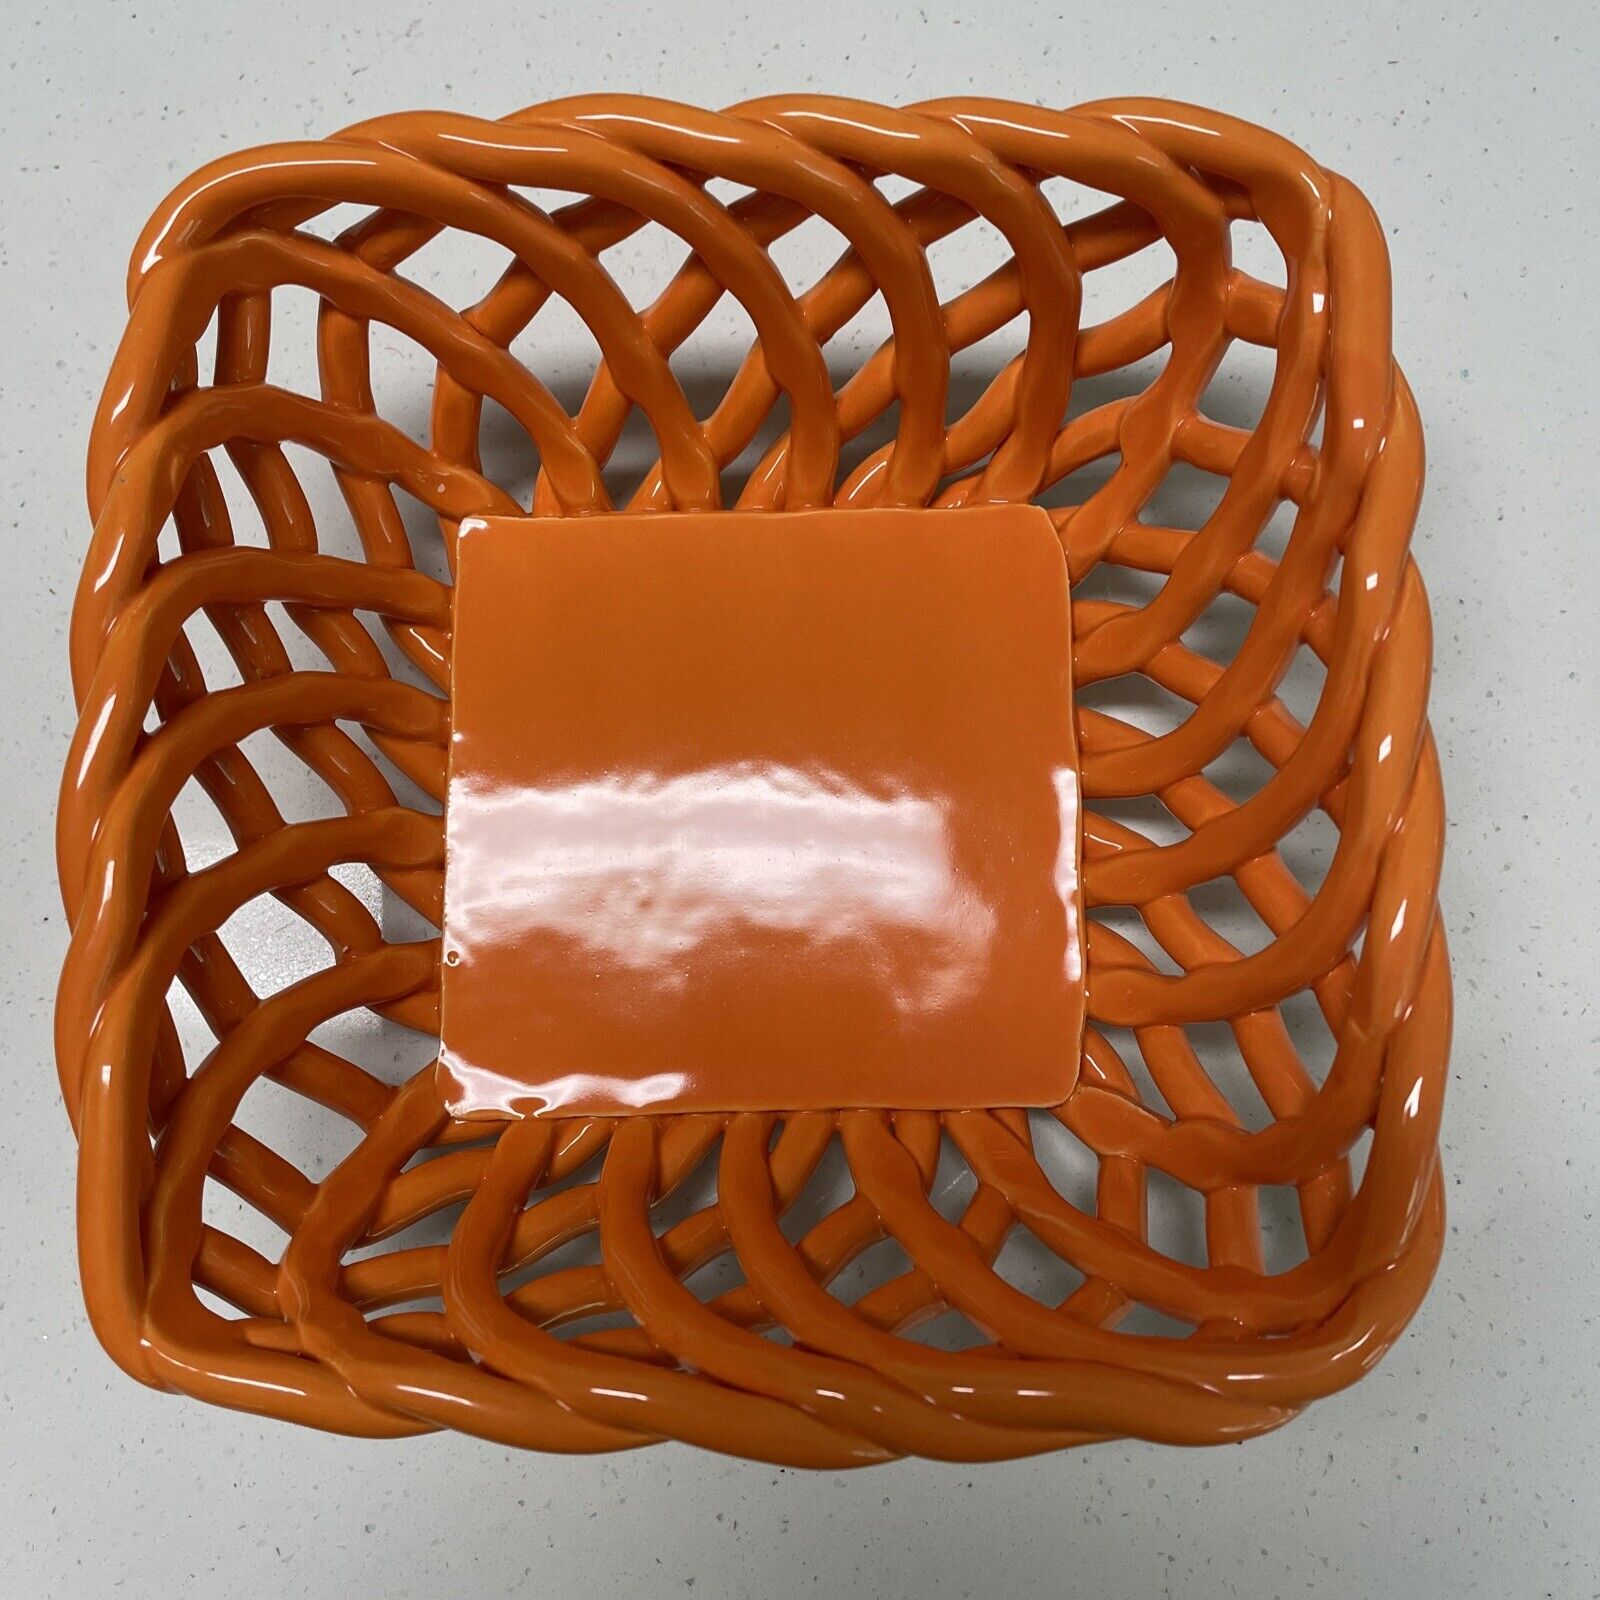 Meritage Lattice Basket Square 7” Bright Pumpkin Orange NWOT